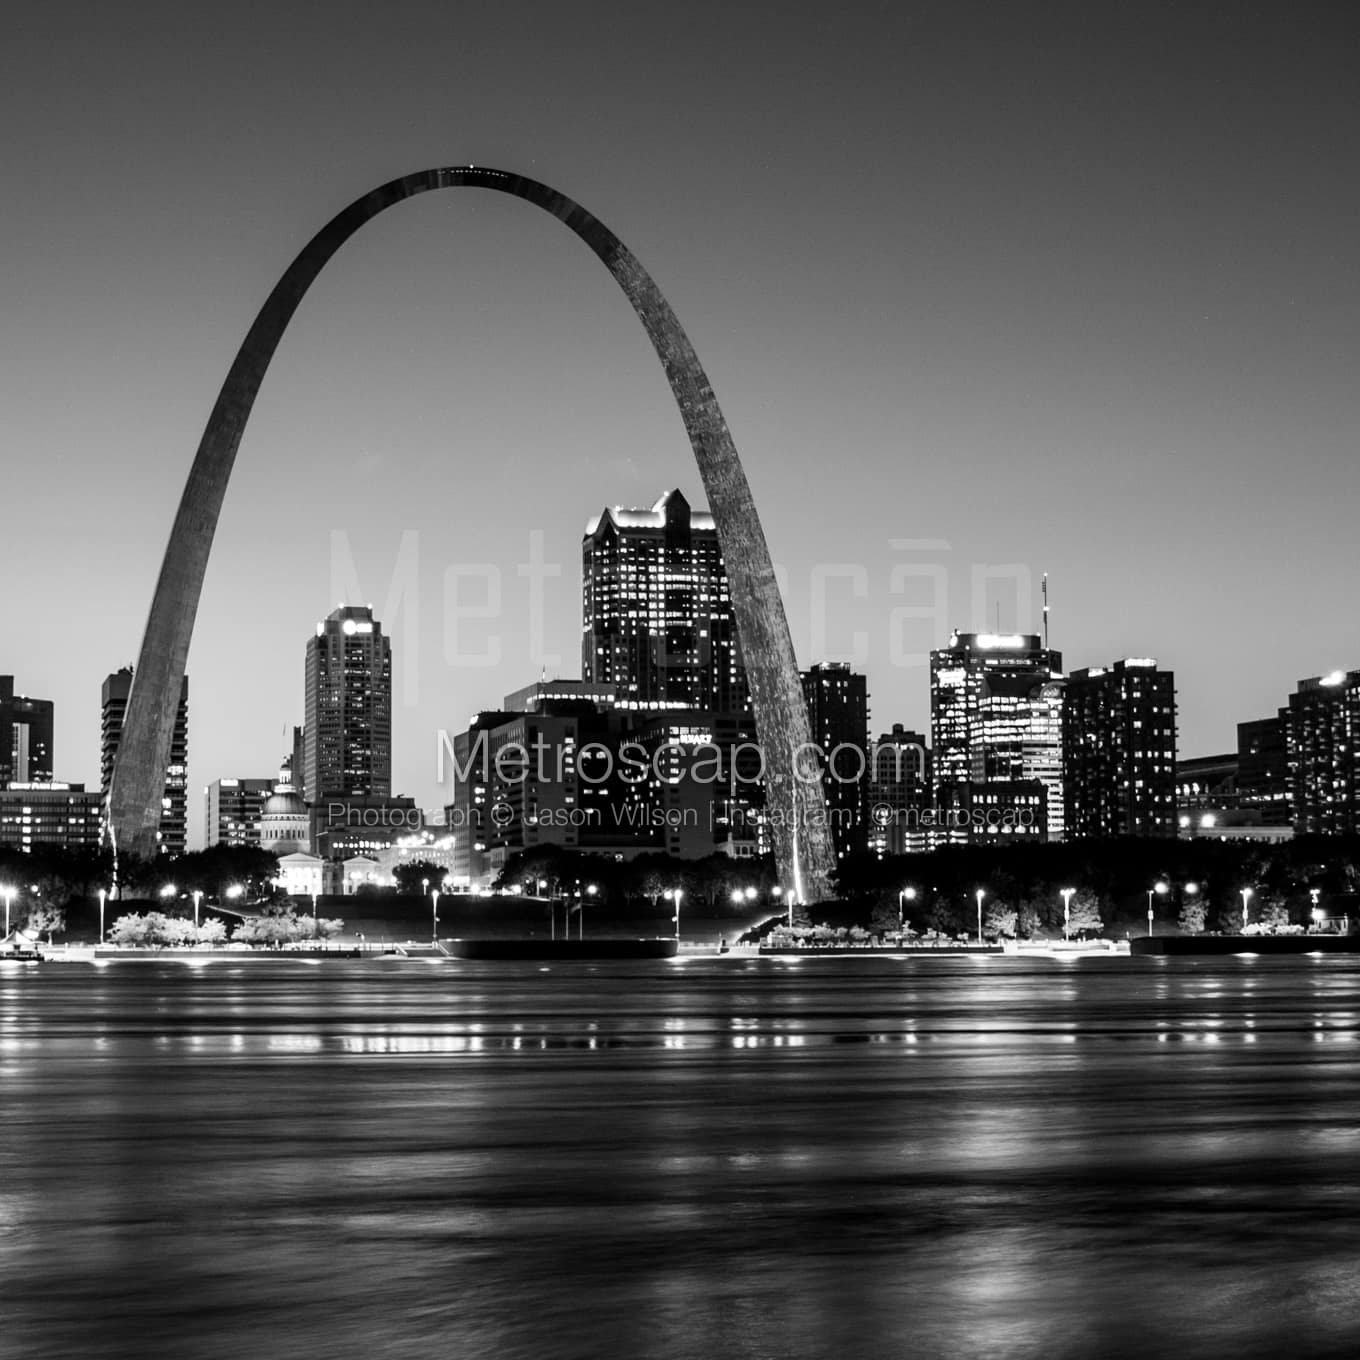 St Louis Black & White Landscape Photography